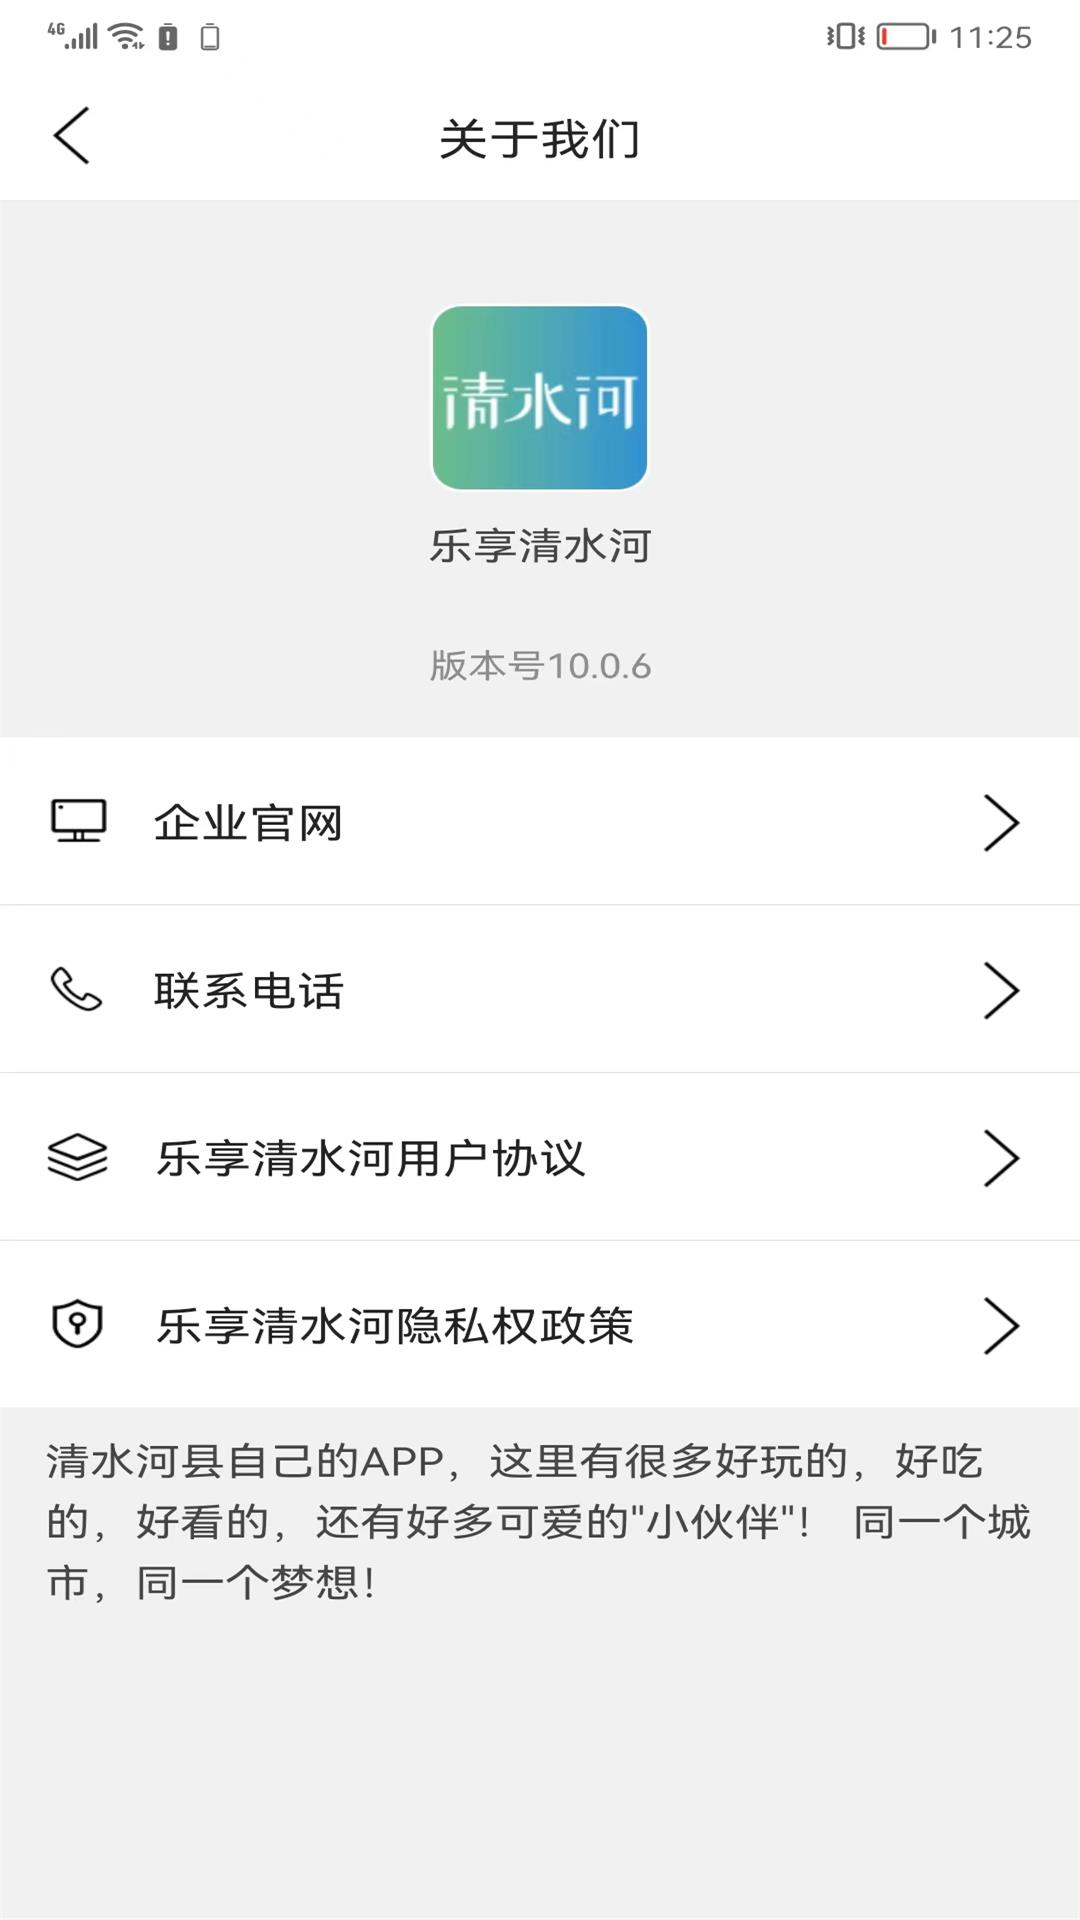 乐享清水河APP下载,乐享清水河同城服务APP官方版 v10.0.8